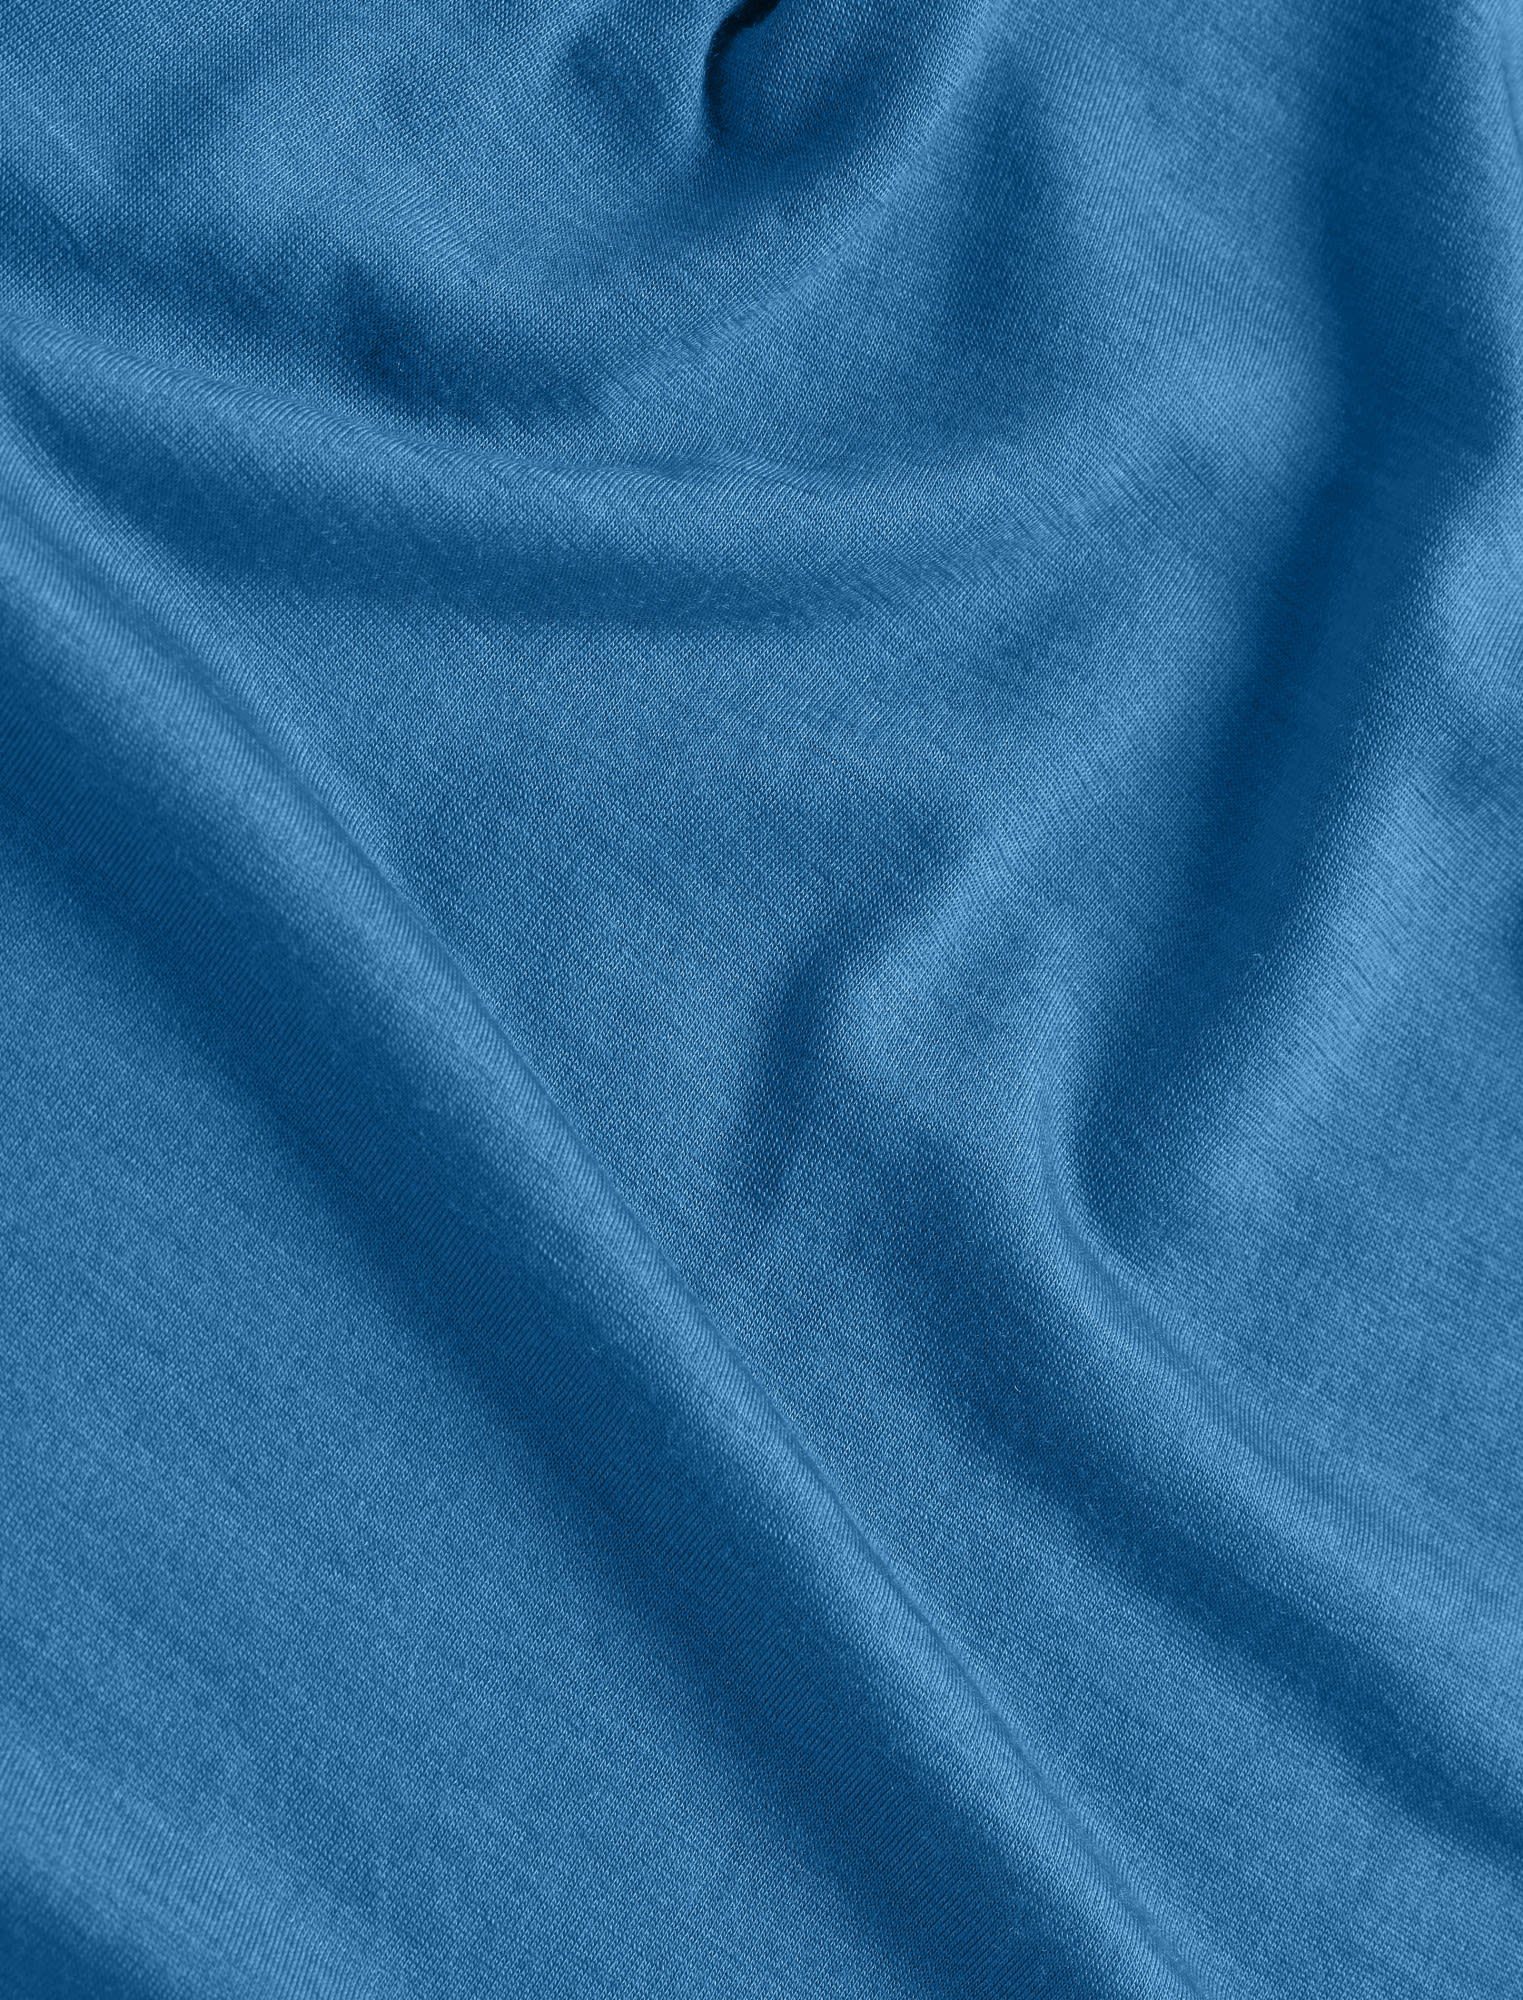 Icebreaker Tee Short-sleeve Ii T-Shirt Sphere Icebreaker Azul Herren M